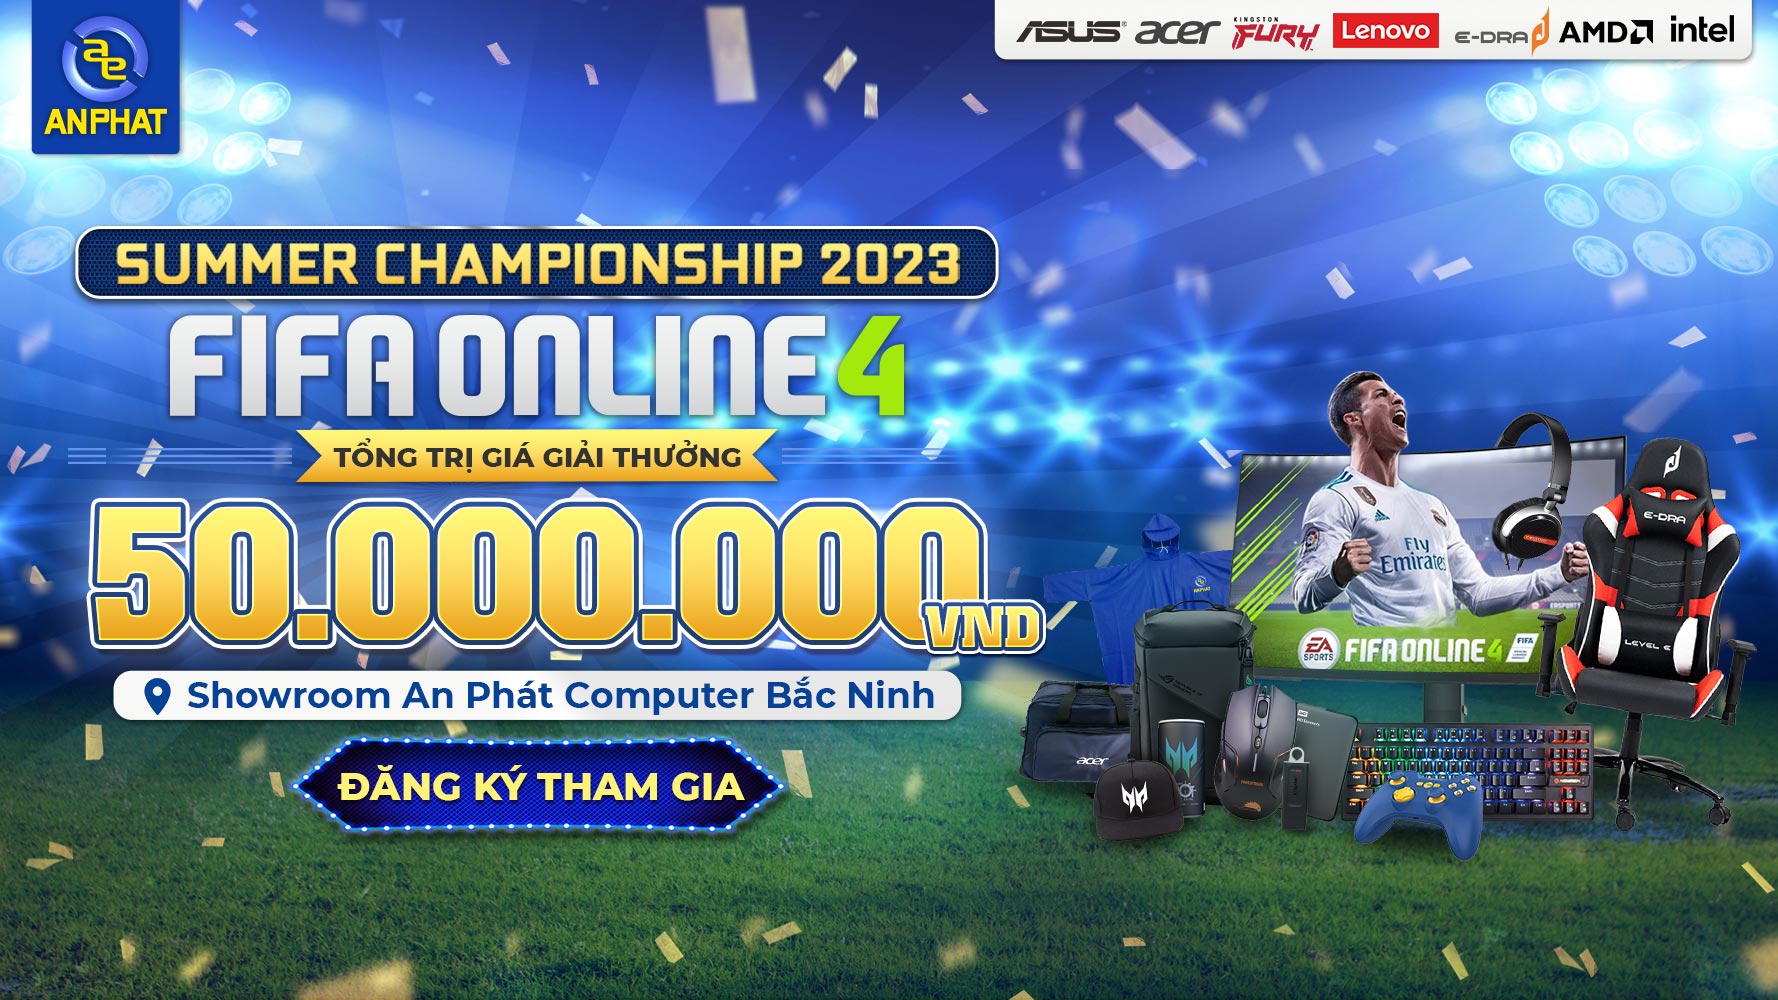 An Phát Fifa Online 4 Summer Championship 2023